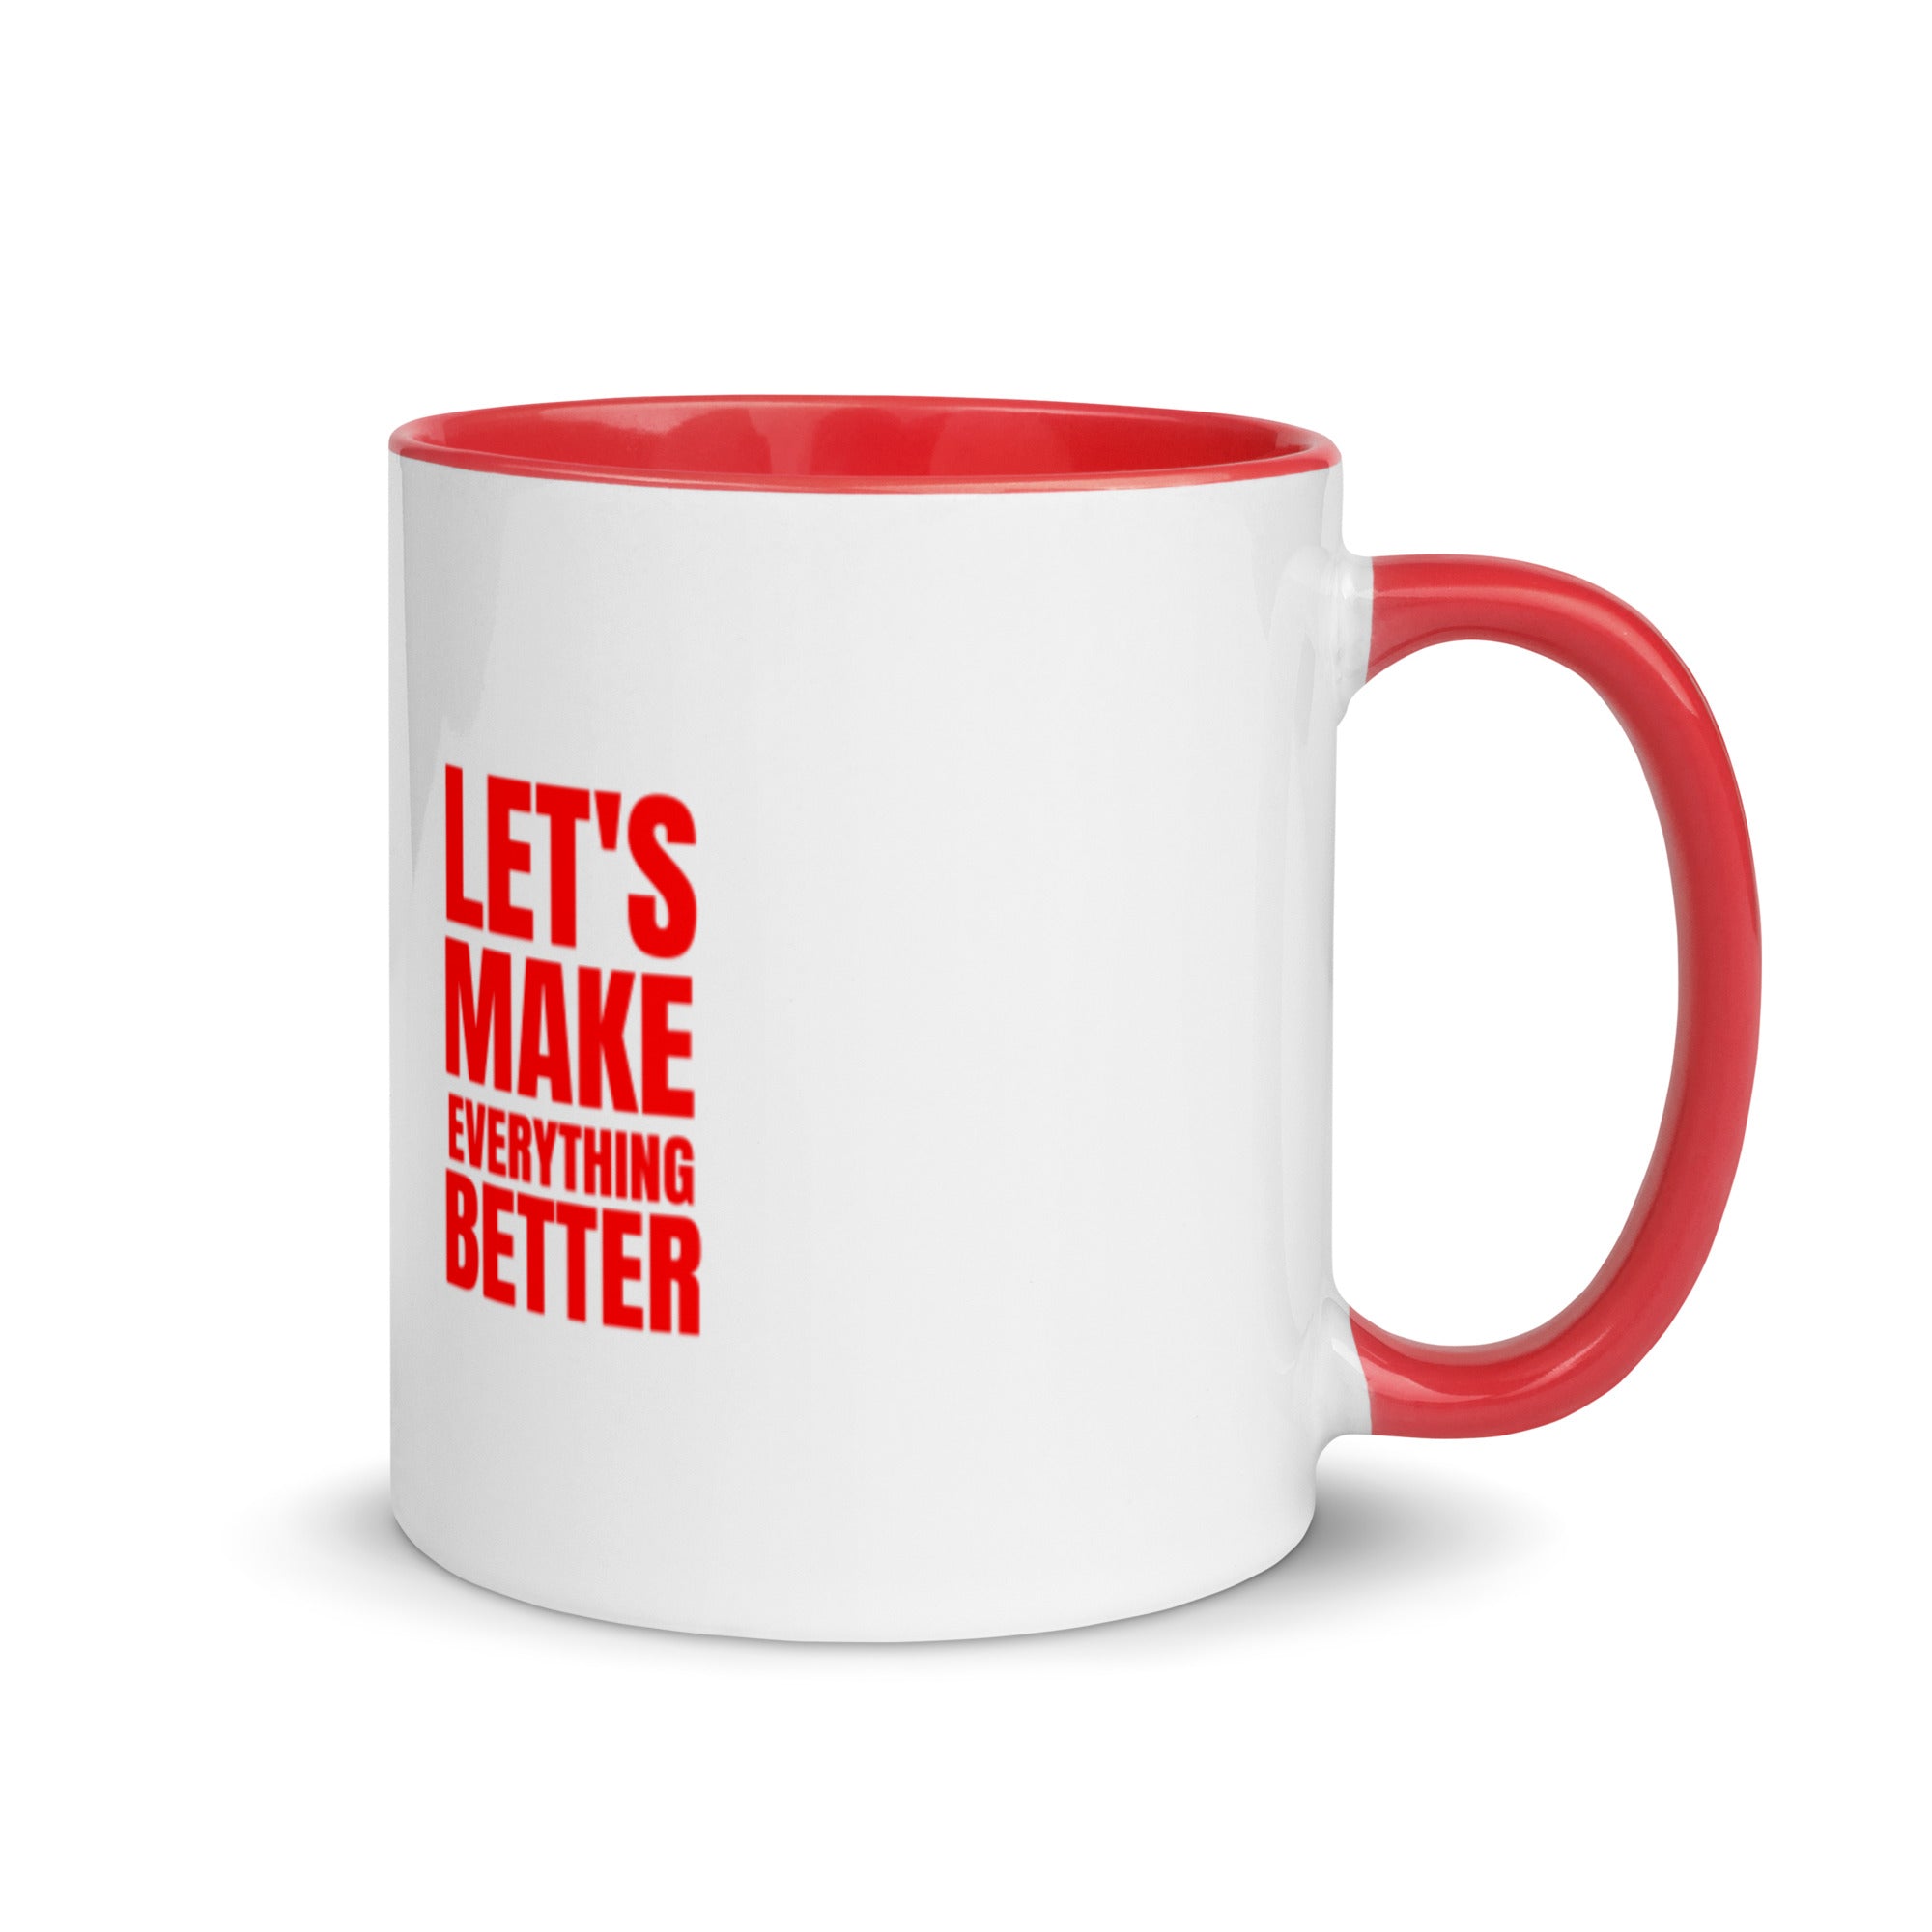 Lets Make Everything Better - Mug with Color Inside